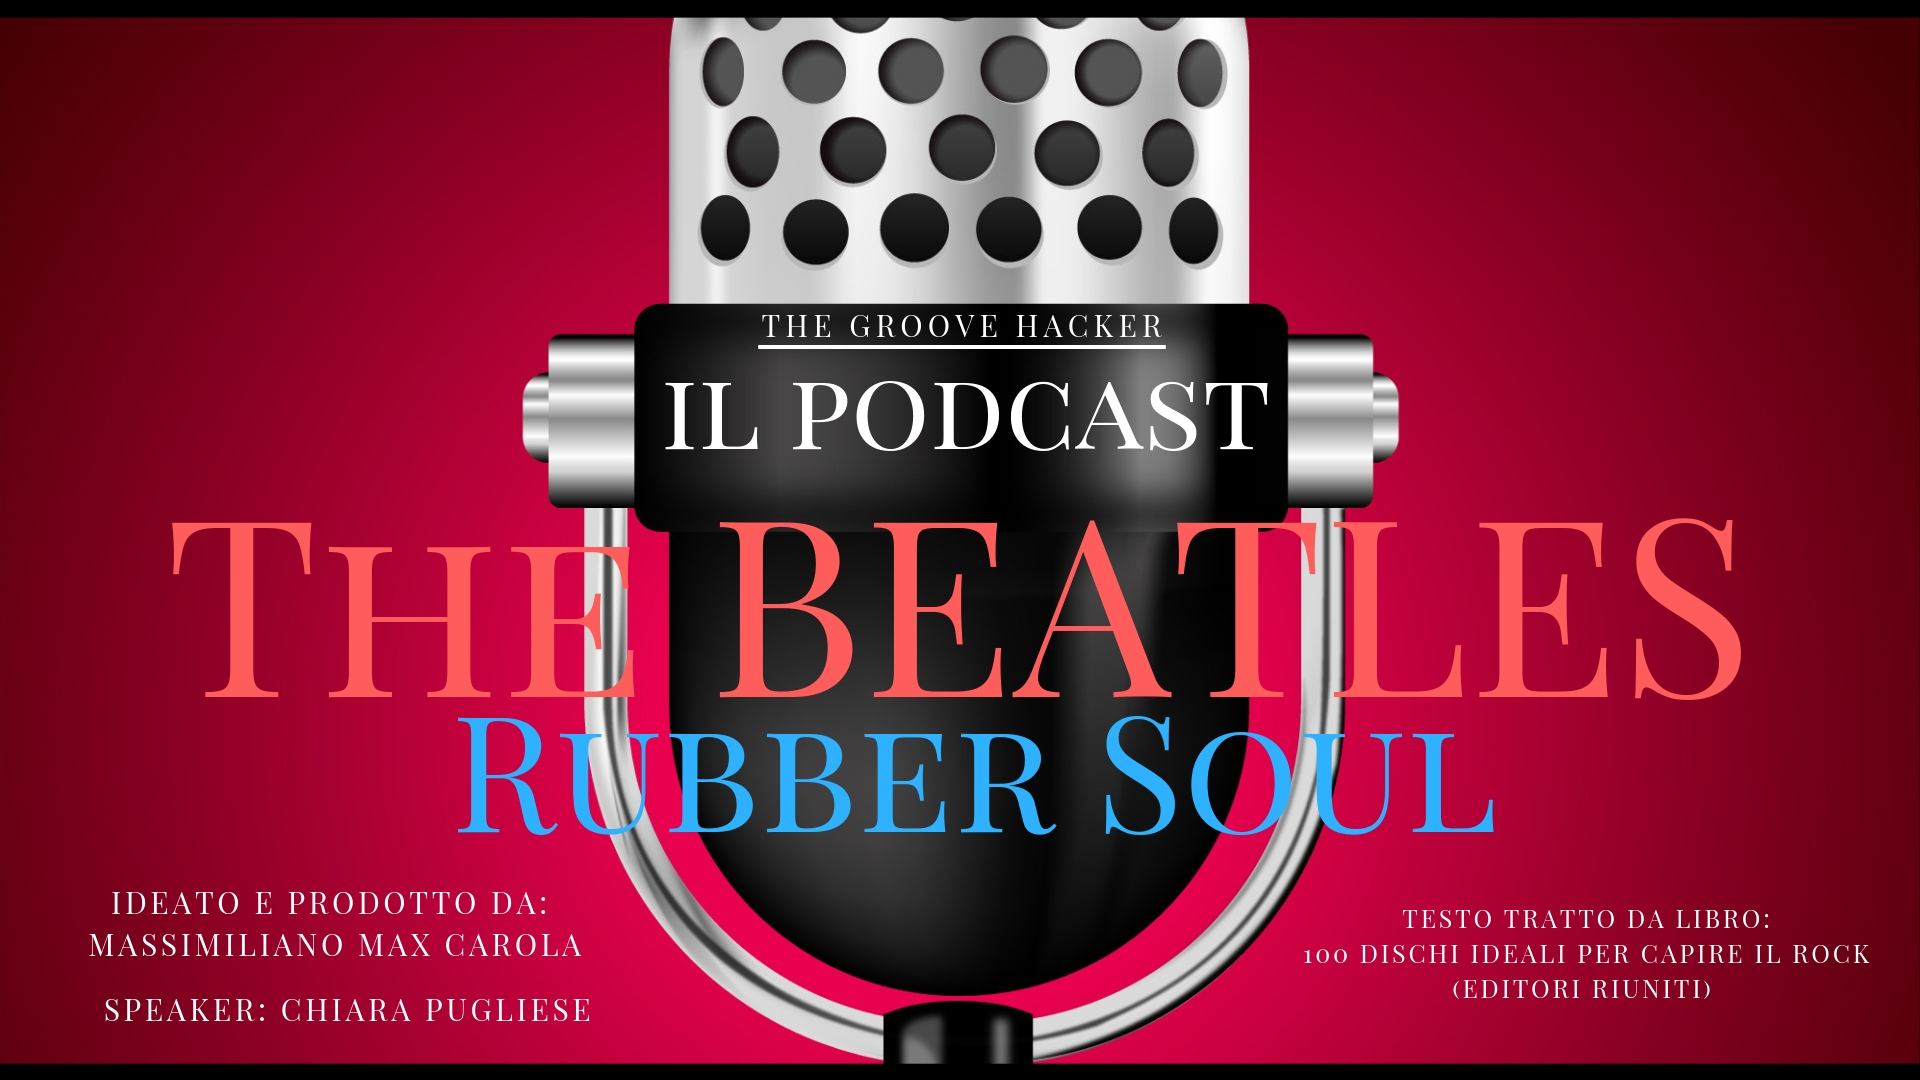 Copertina del podcast su Rubber Soul dei Beatles